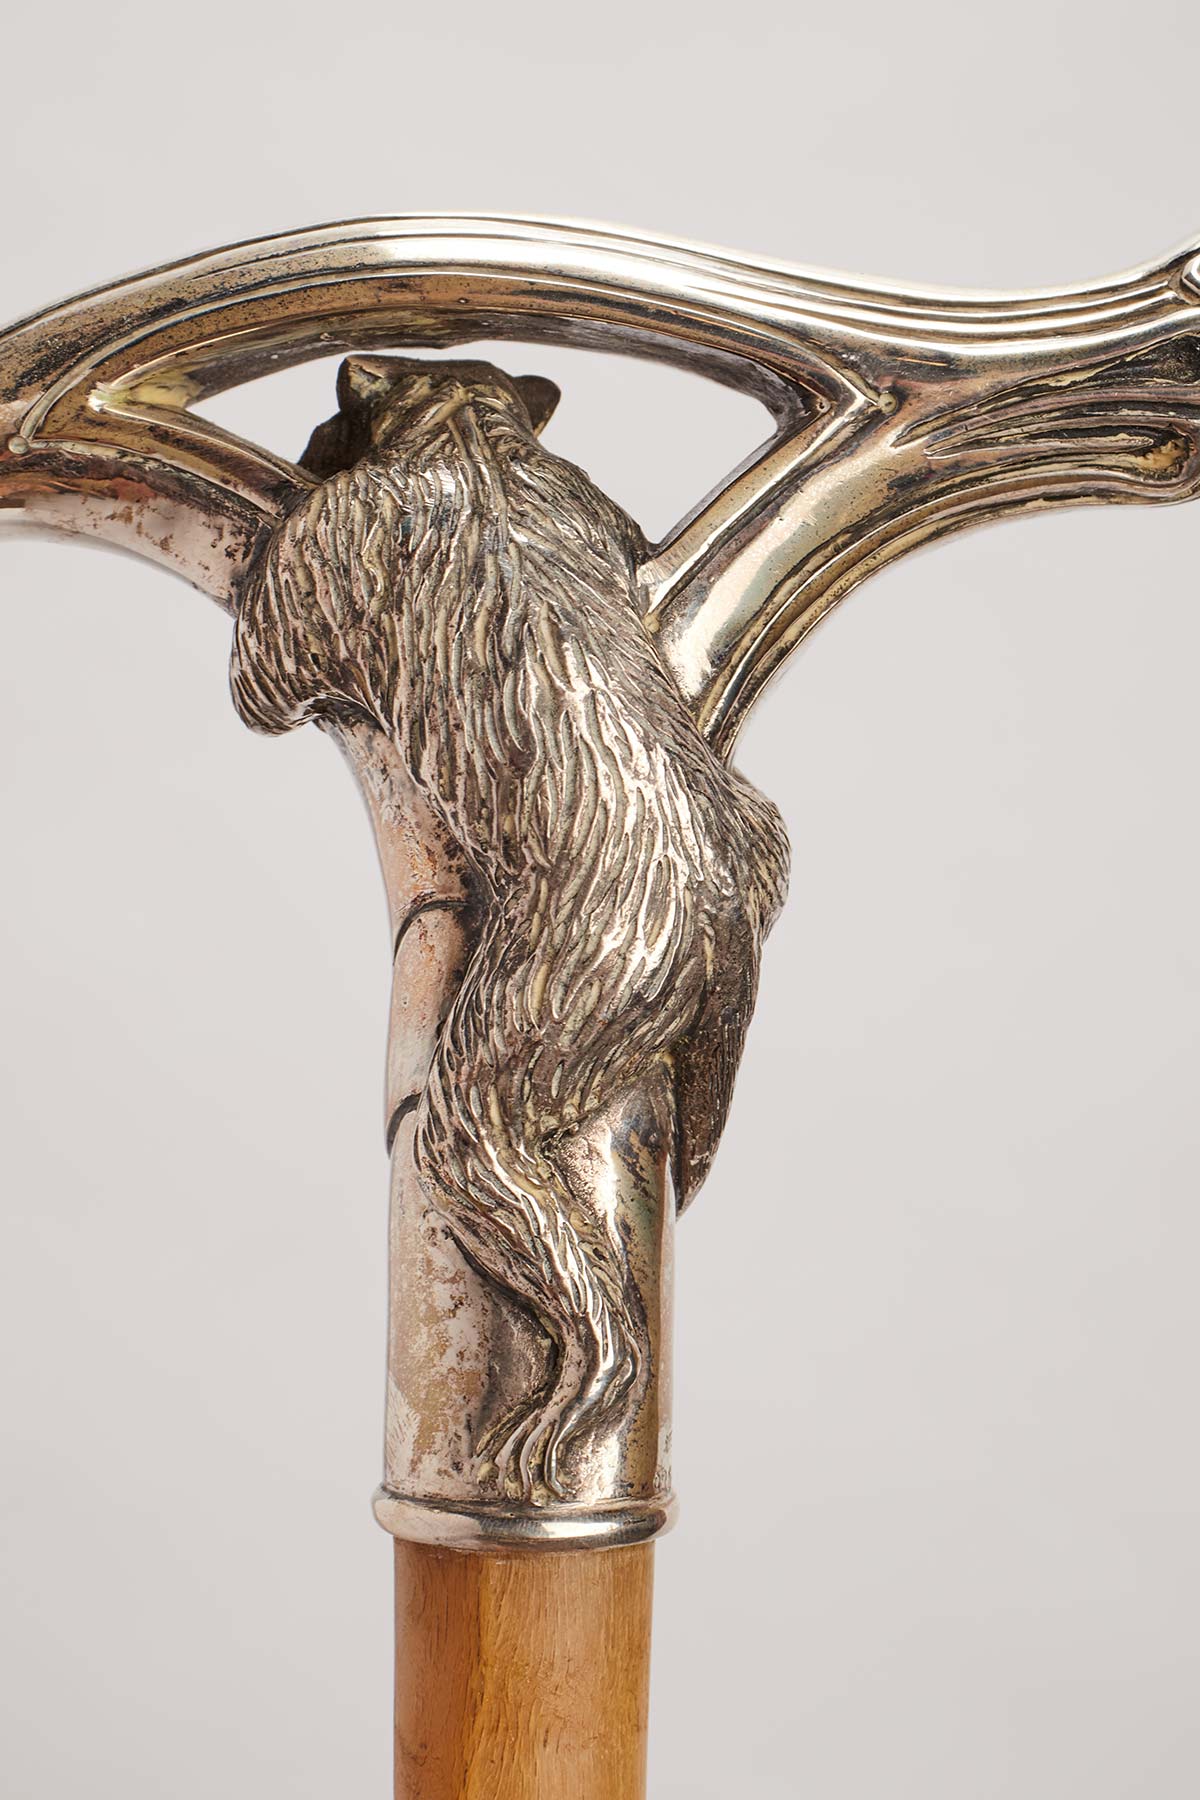 Bastone con pomolo in argento raffigurante testa di cavallo.